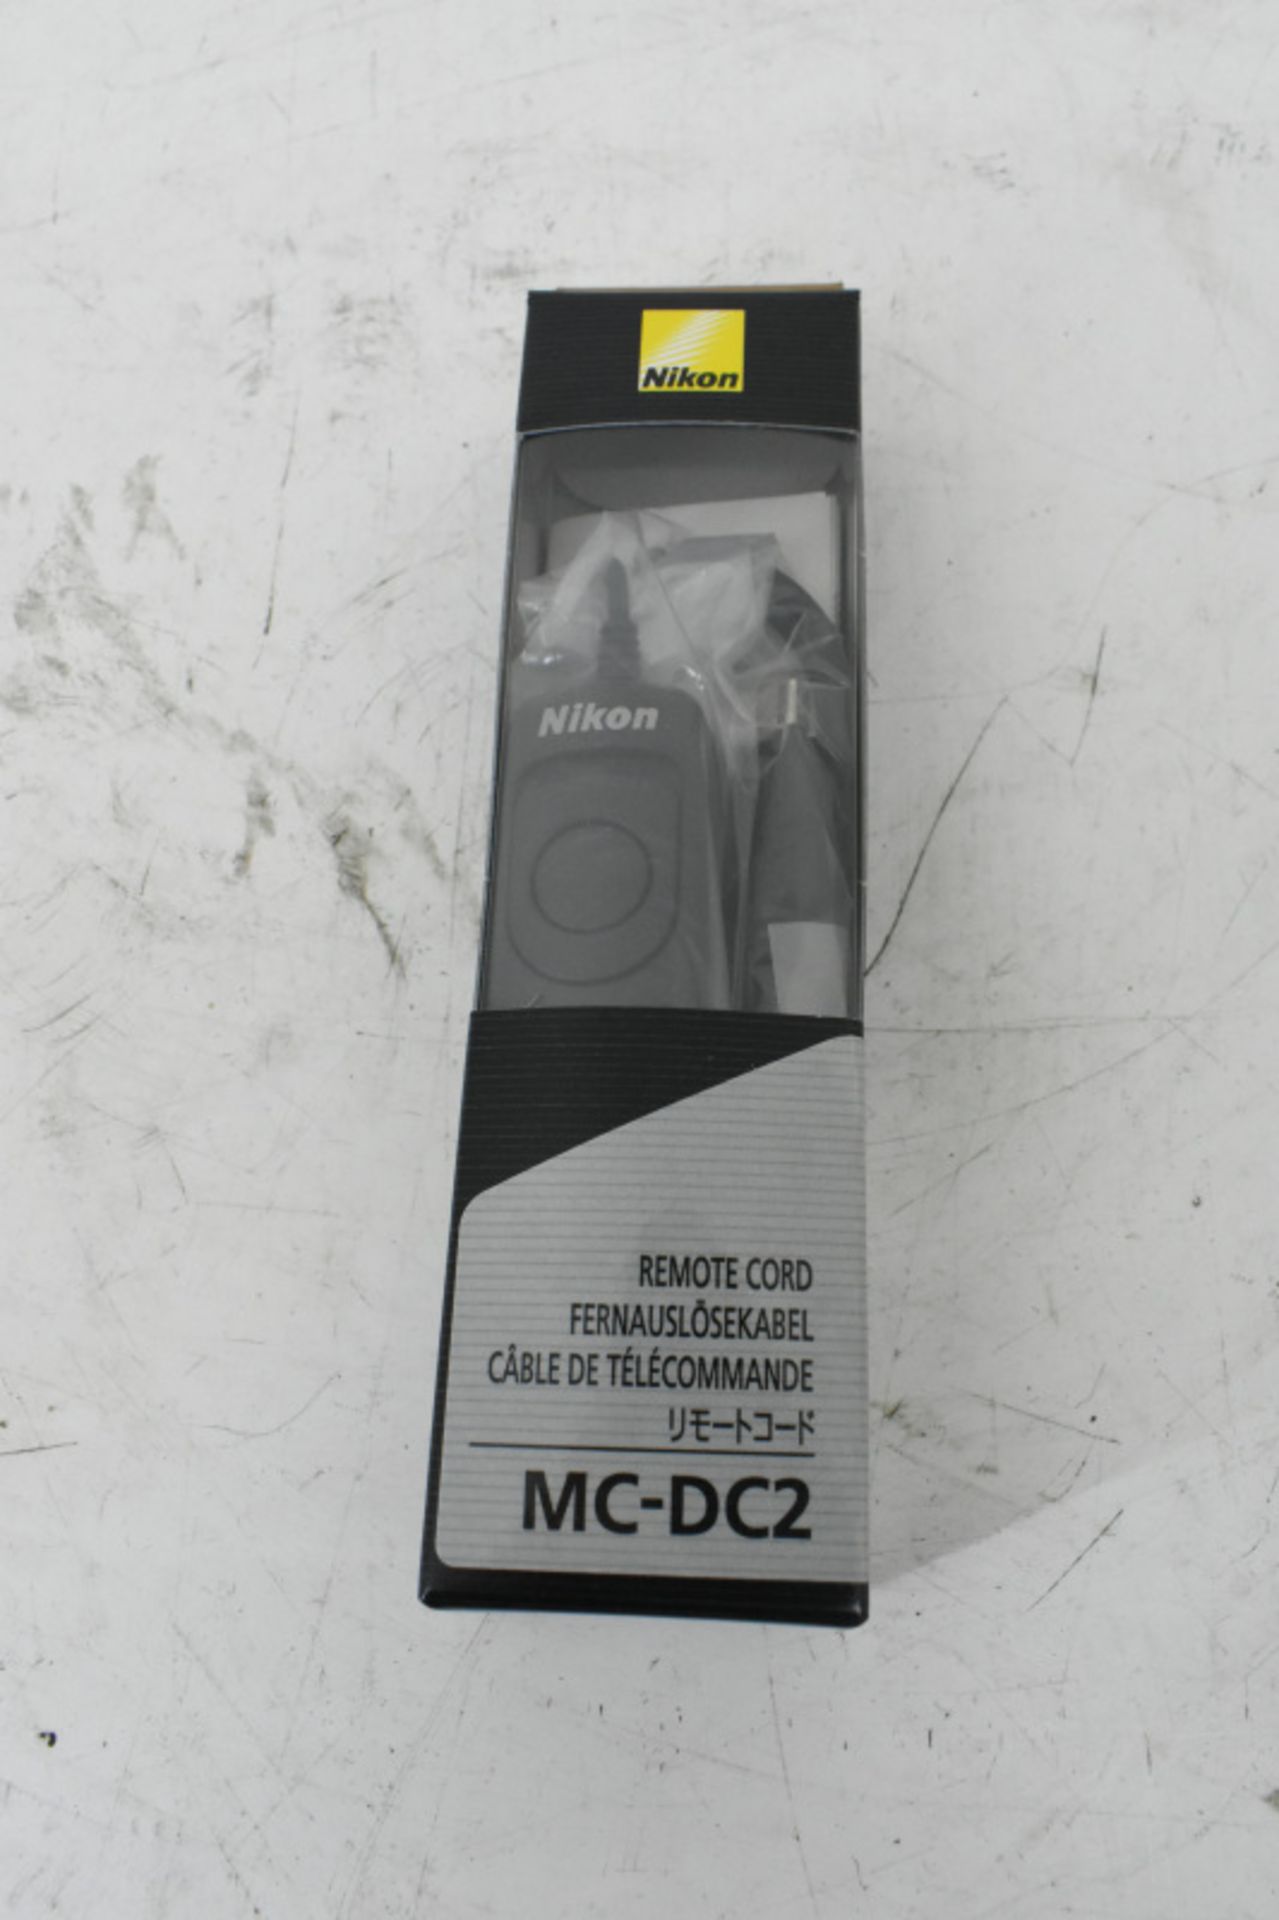 Nikon MC-DC2 Camera Remote Cords - 10 per box - 2 boxes - Image 2 of 2